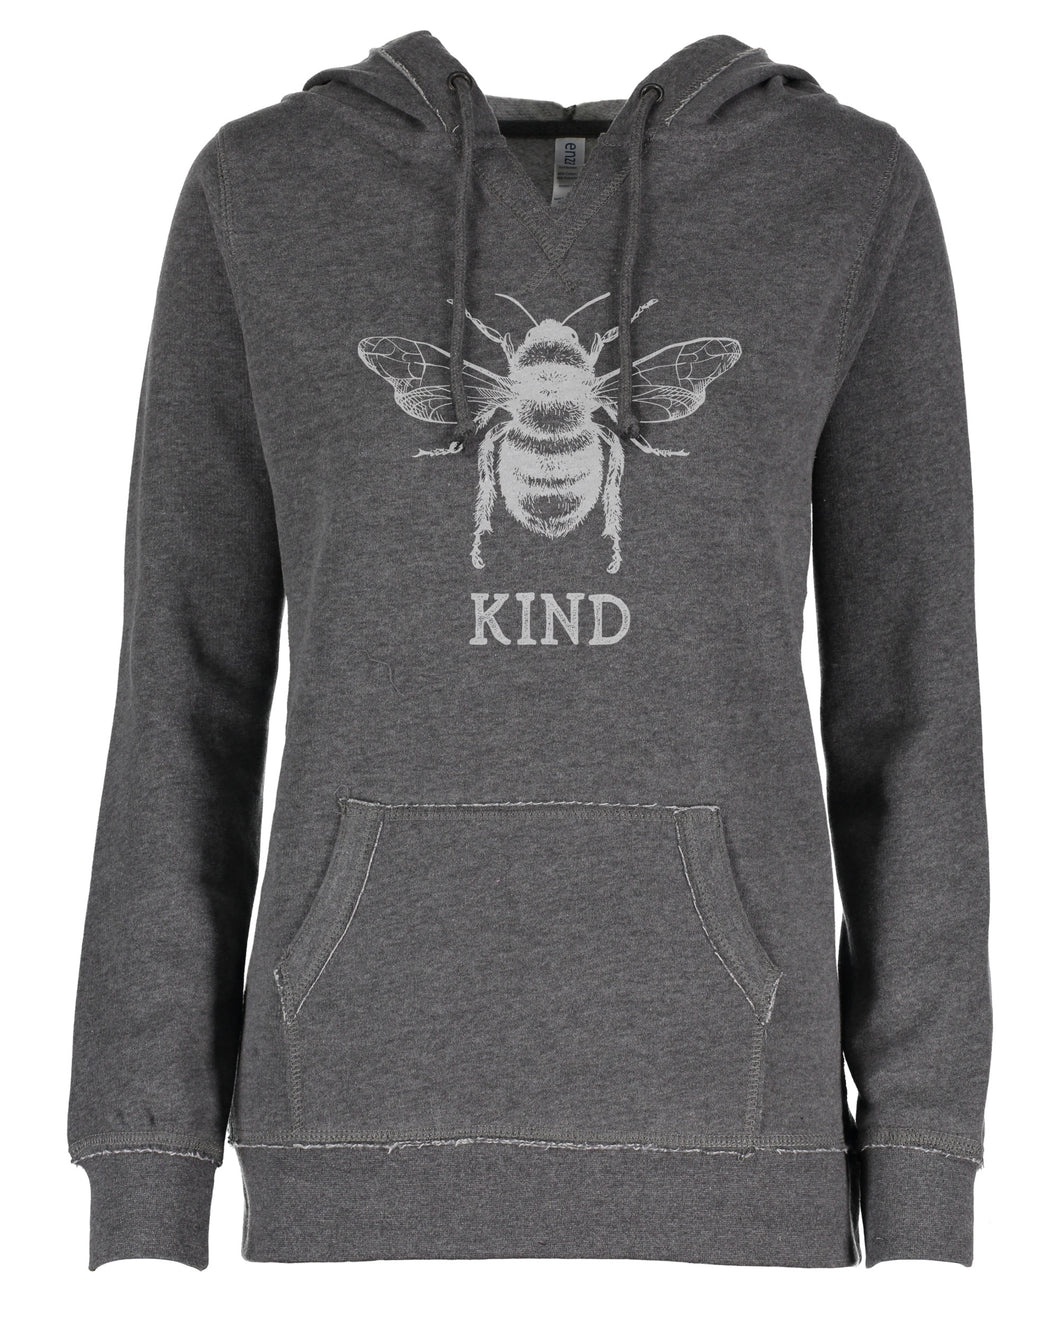 Bee Kind Ladies Hoodie Sweatshirt- Starter Set of 10 – Sister Bees